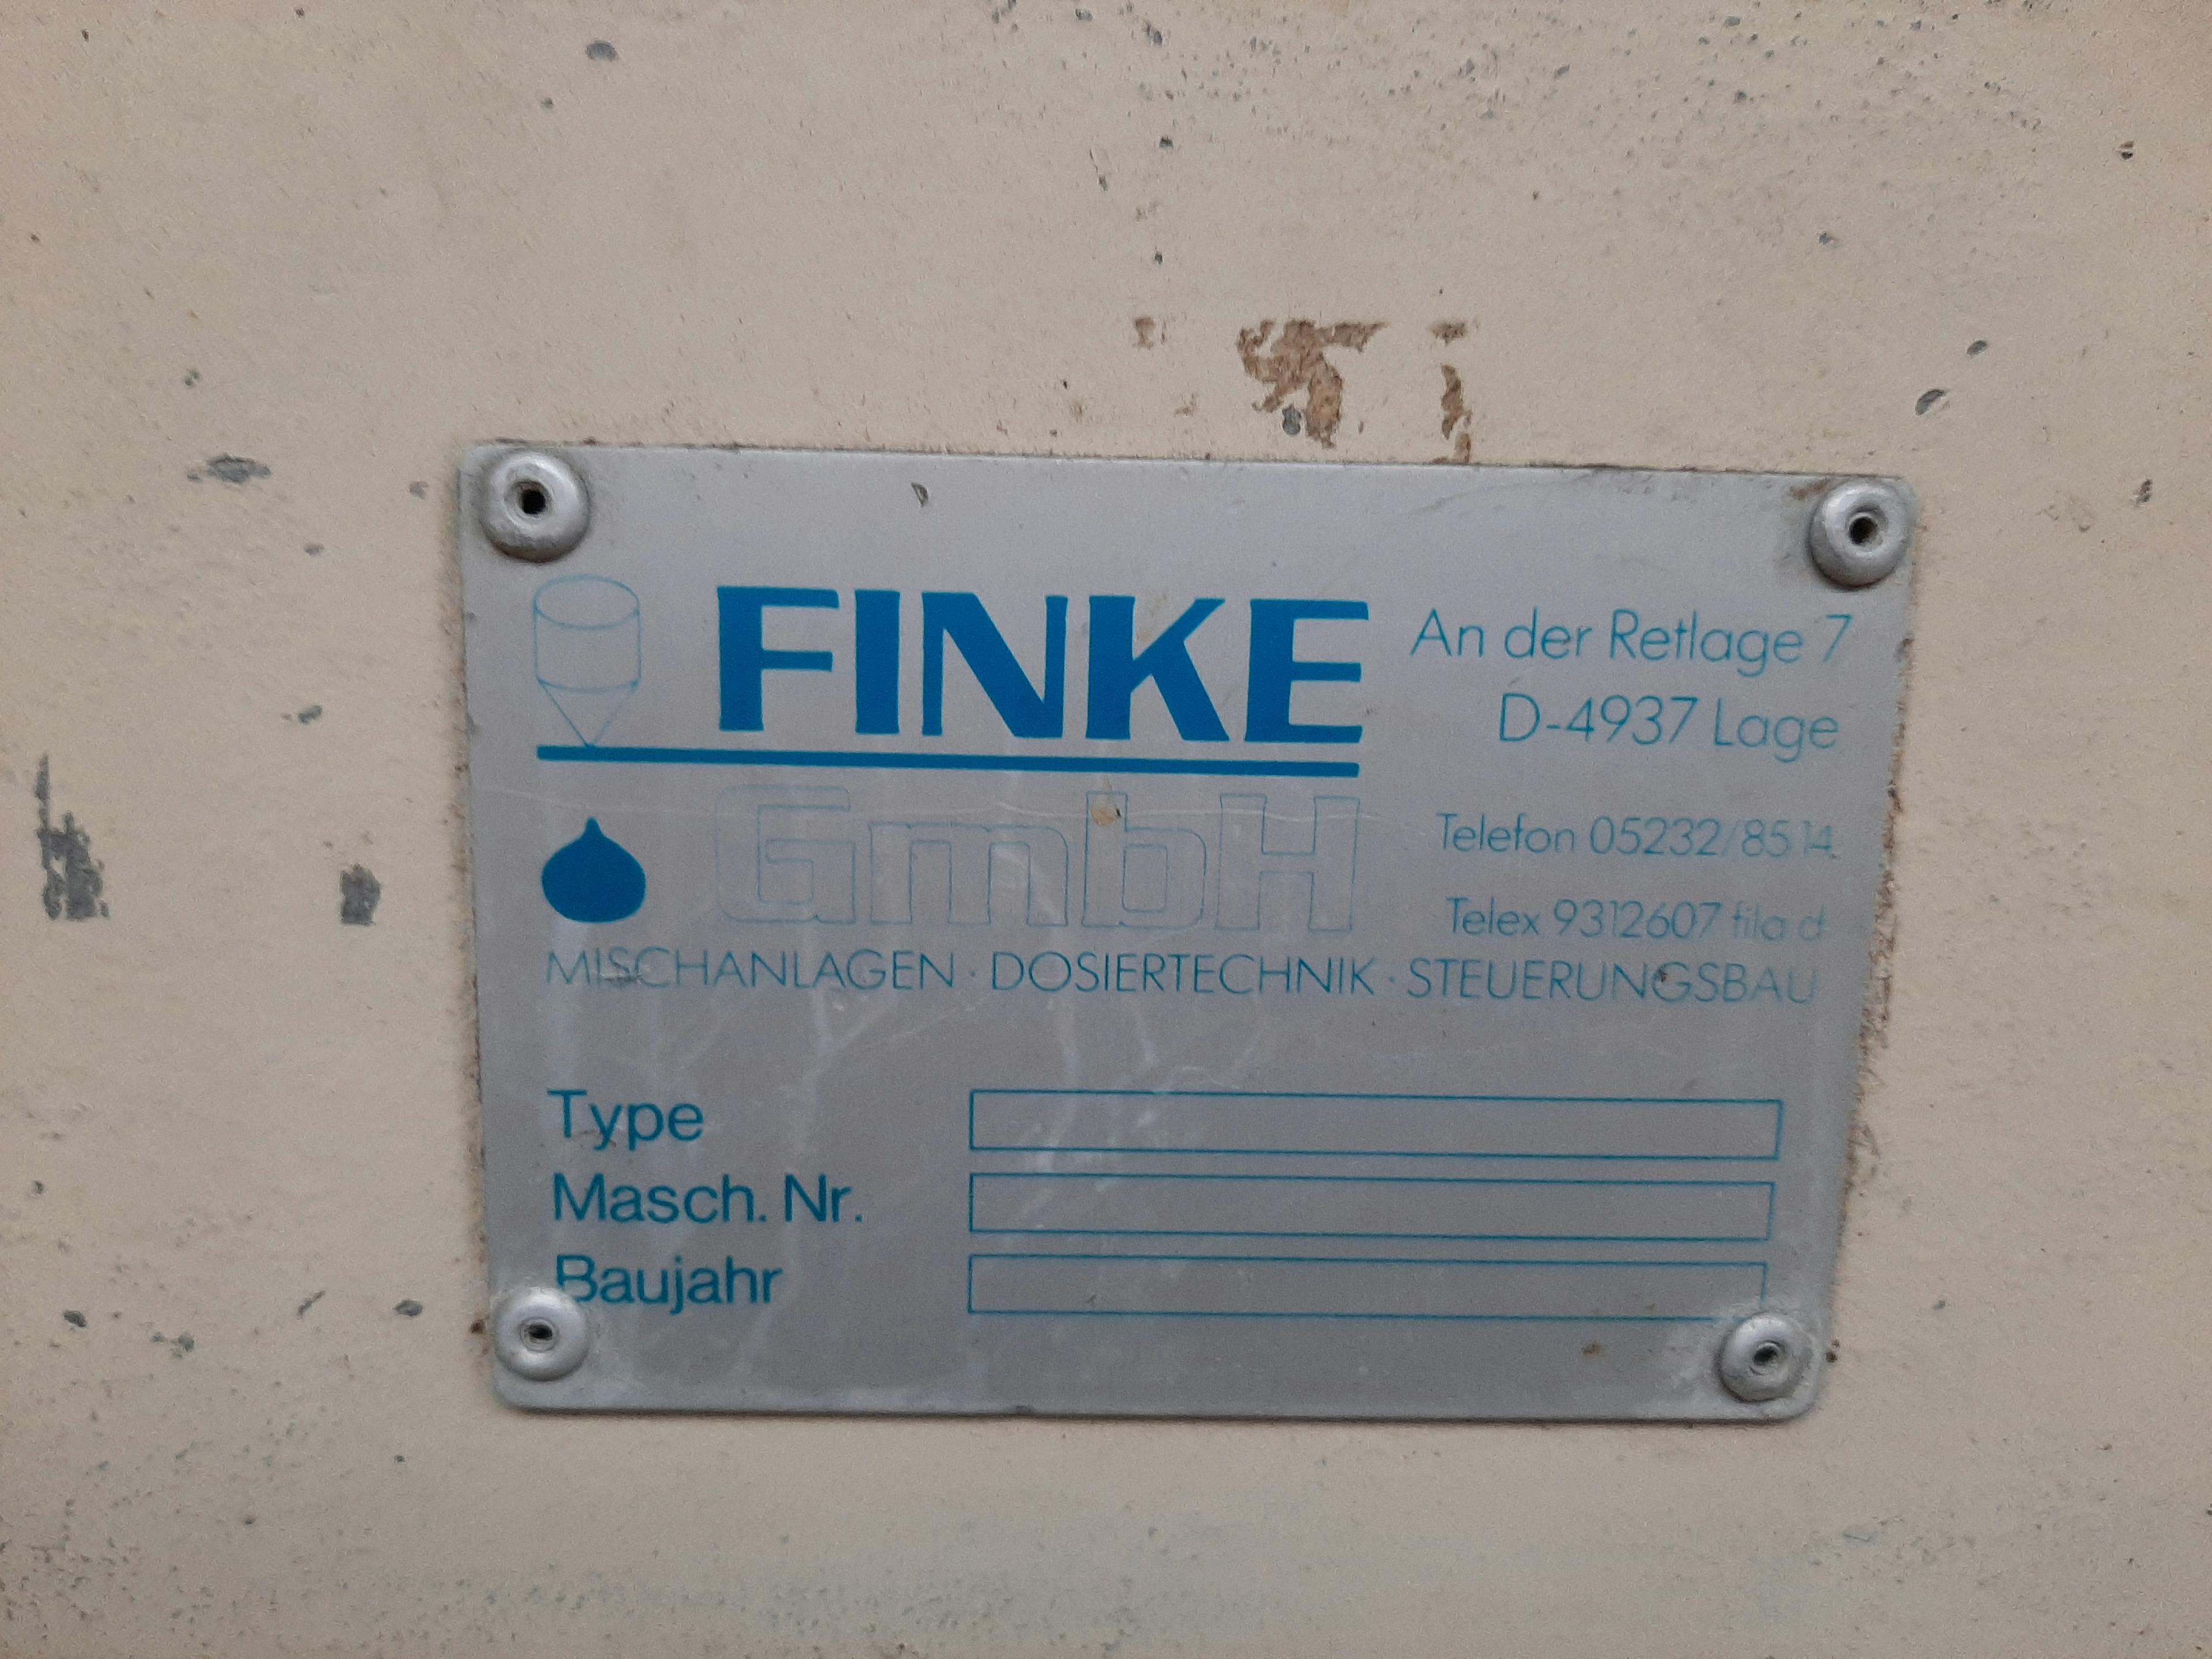 Finke - Remplisseuse de liquide - image 3